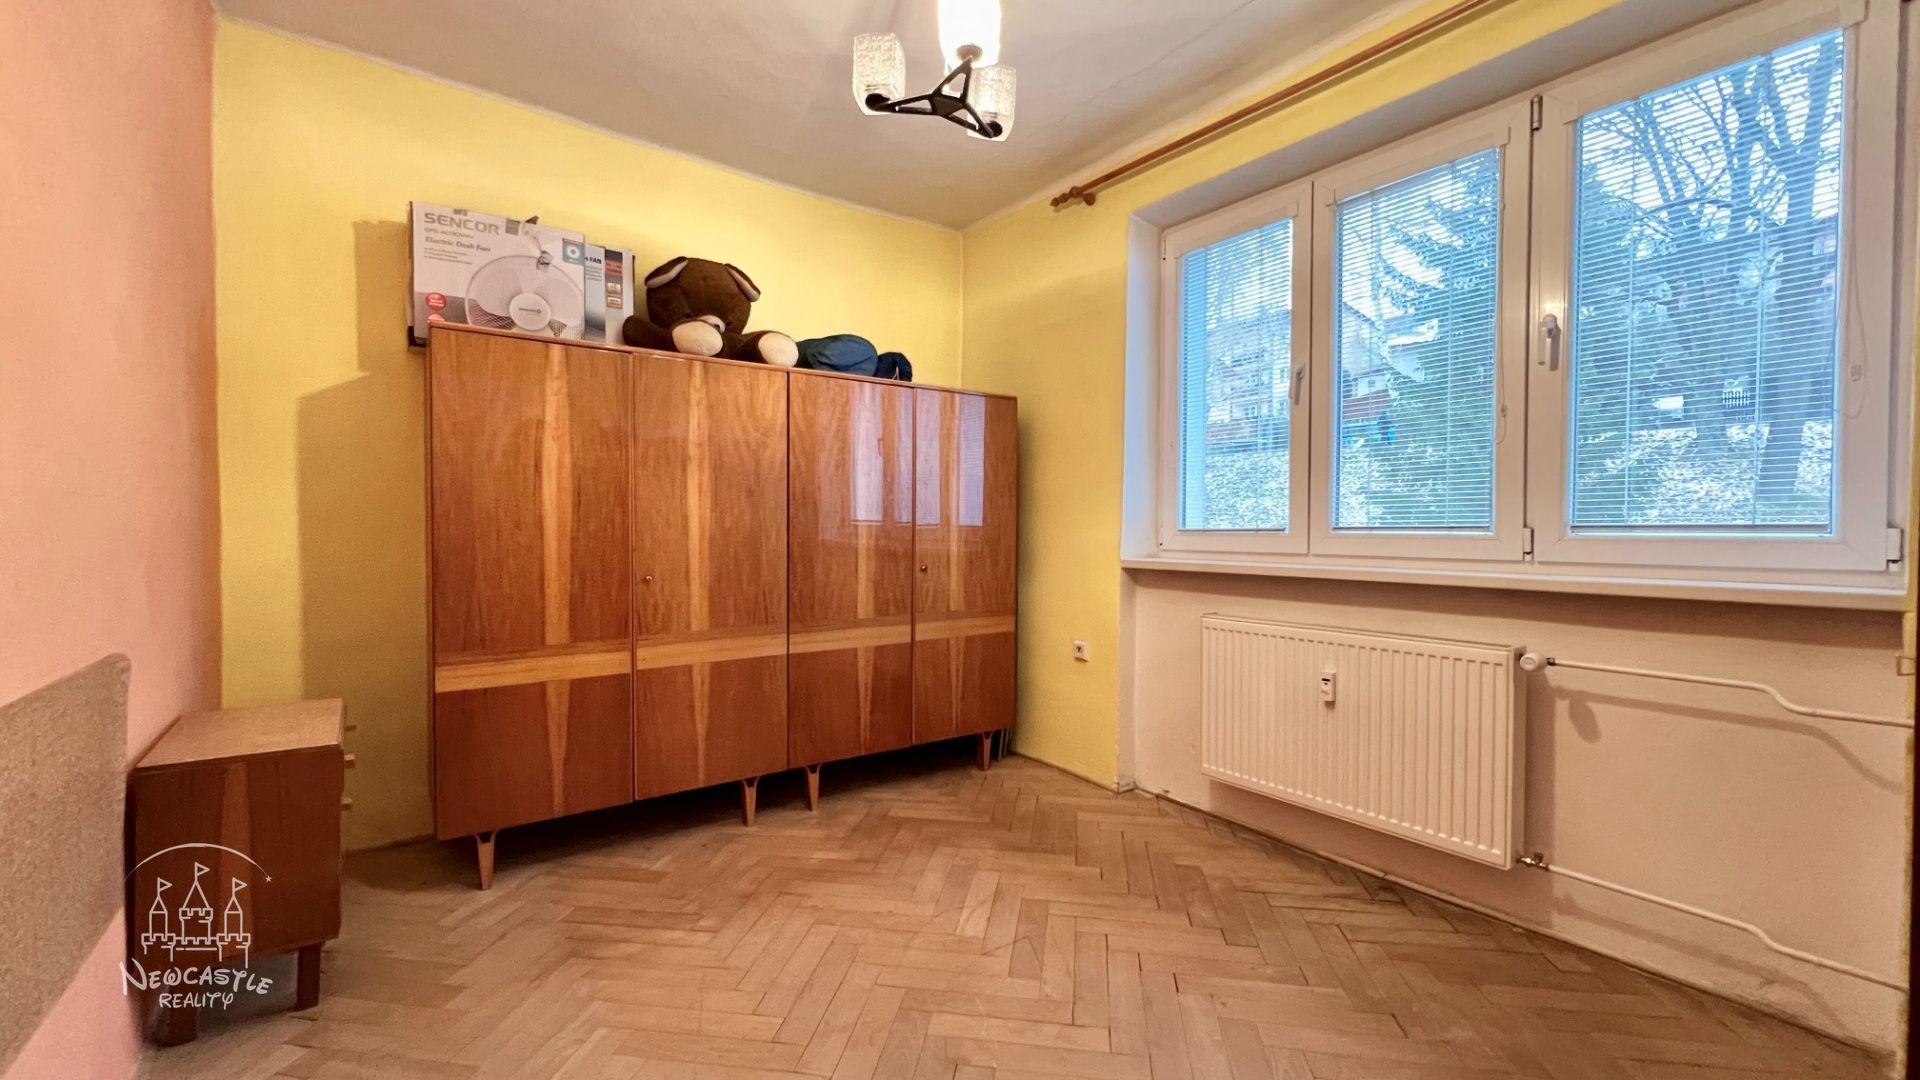 NEWCASTLE⏐PREDAJ 3 izbový byt na ul. Dolná v Kremnici (60m2) + 2 balkóny